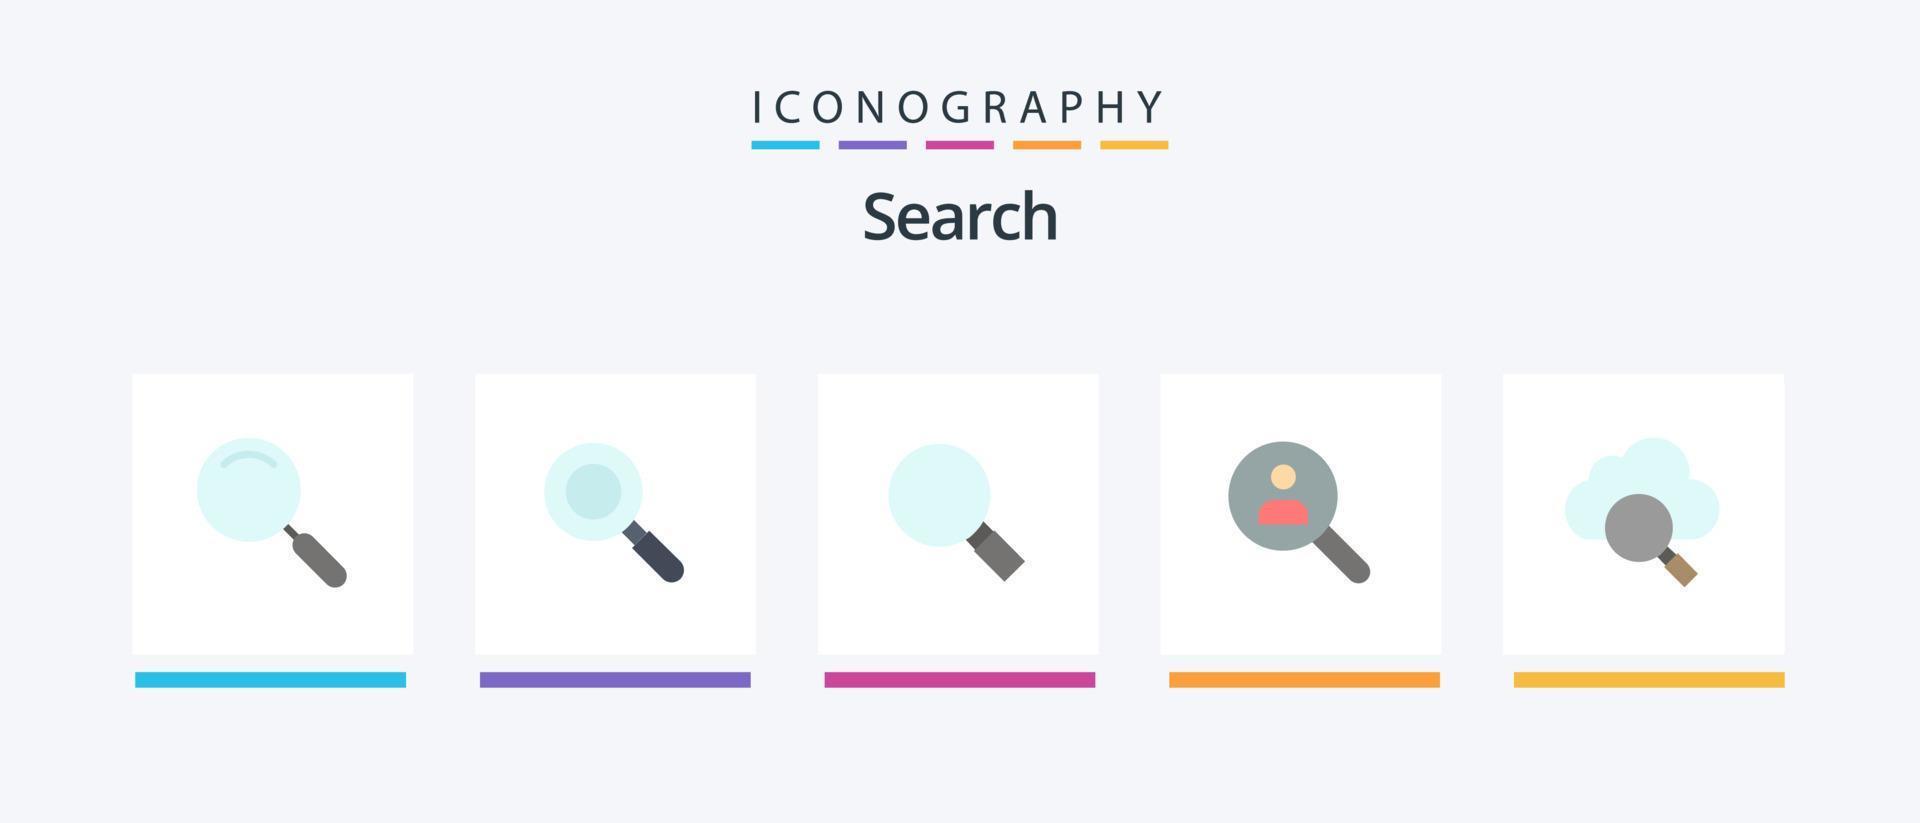 busque el paquete de iconos de 5 planos que incluye la búsqueda. buscar. Mira. gente. encontrar. diseño de iconos creativos vector